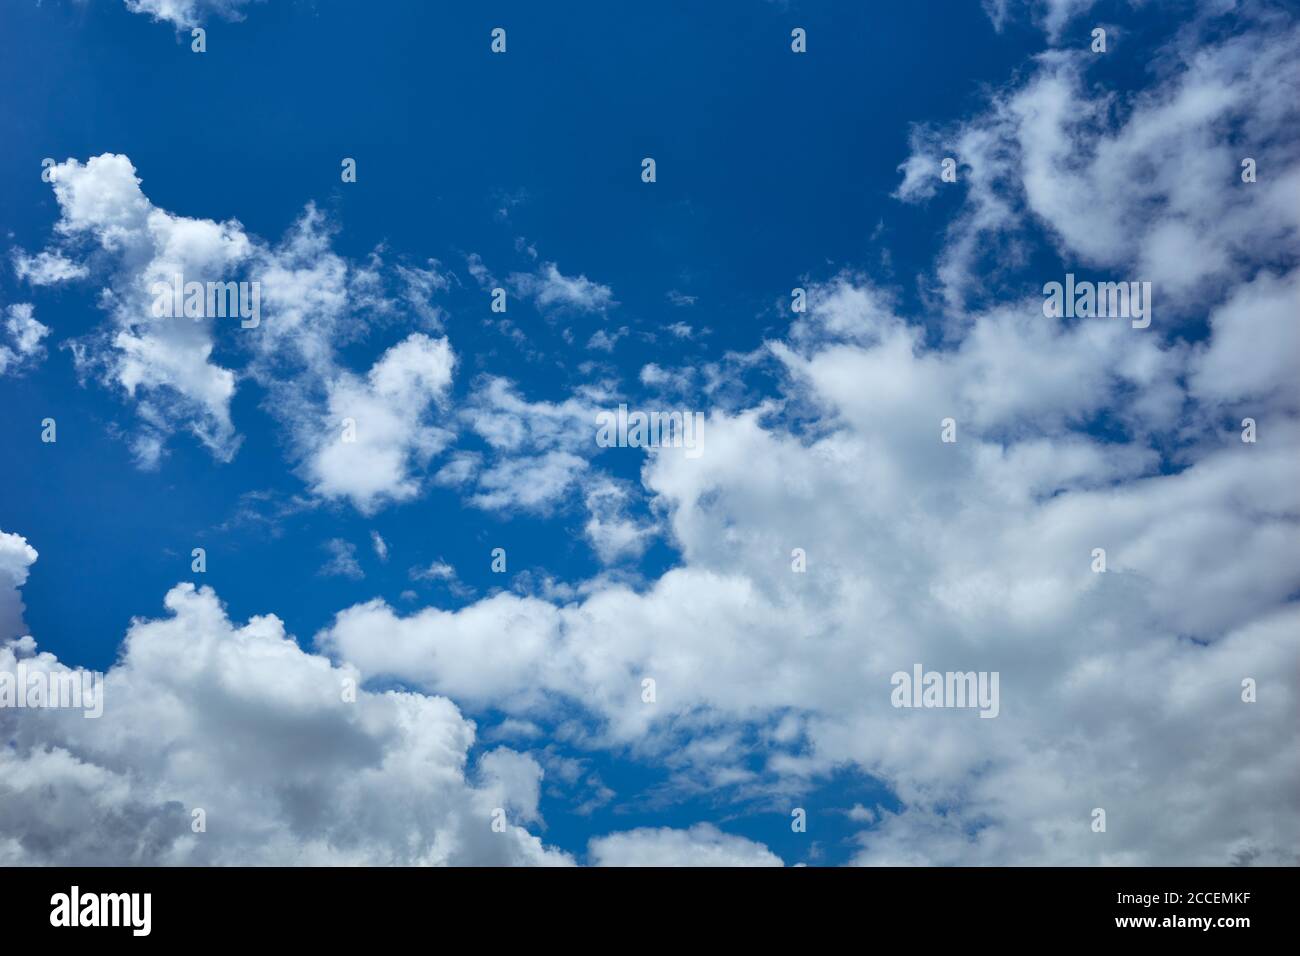 Wolken am Himmel`s Bläulichkeit. Himmlische Pracht eines schönen bewölkten Tages. Hintergrund für Vorhersage und Meteorologie Illustration Stockfoto